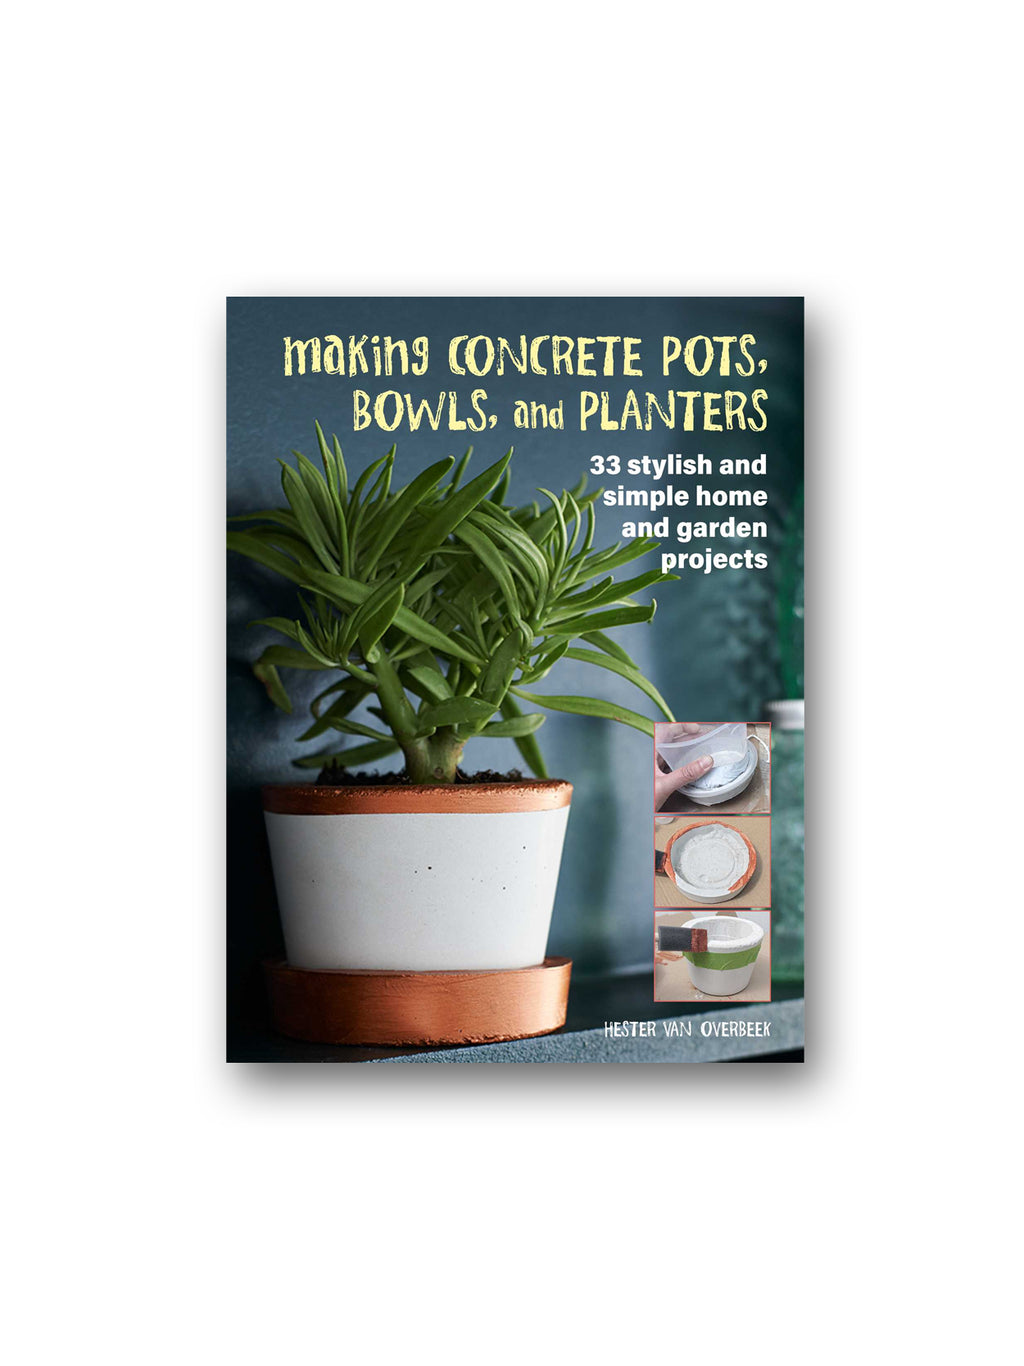 Making Concrete Pots, Bowls, and Planters